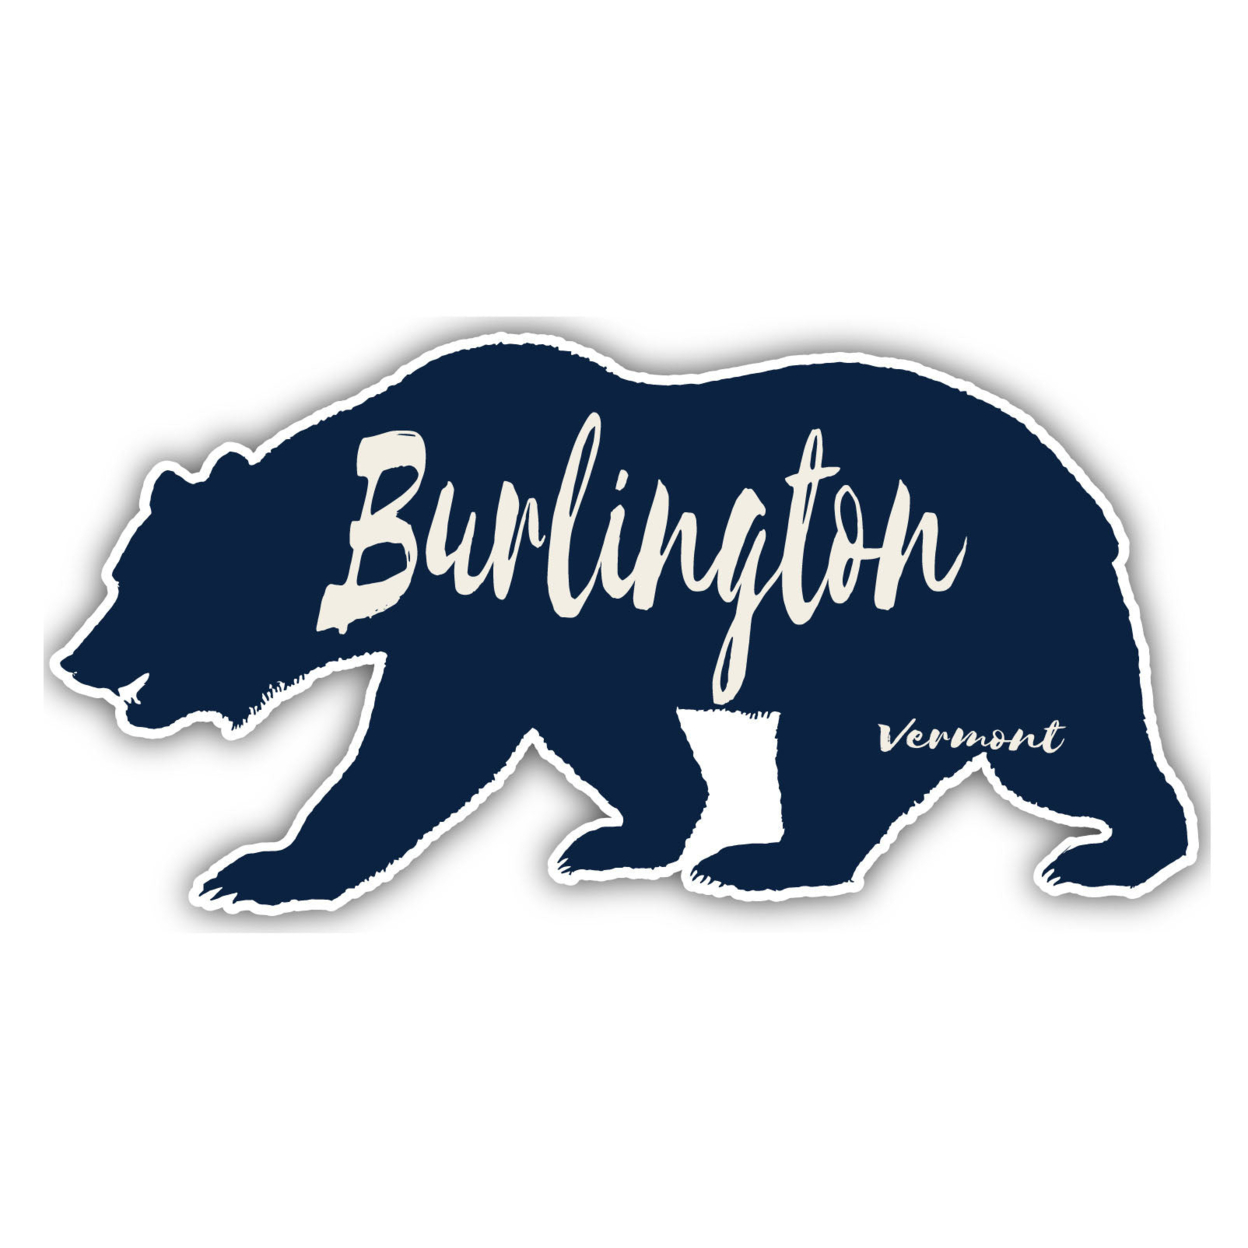 Burlington Vermont Souvenir Decorative Stickers (Choose Theme And Size) - 4-Pack, 4-Inch, Tent